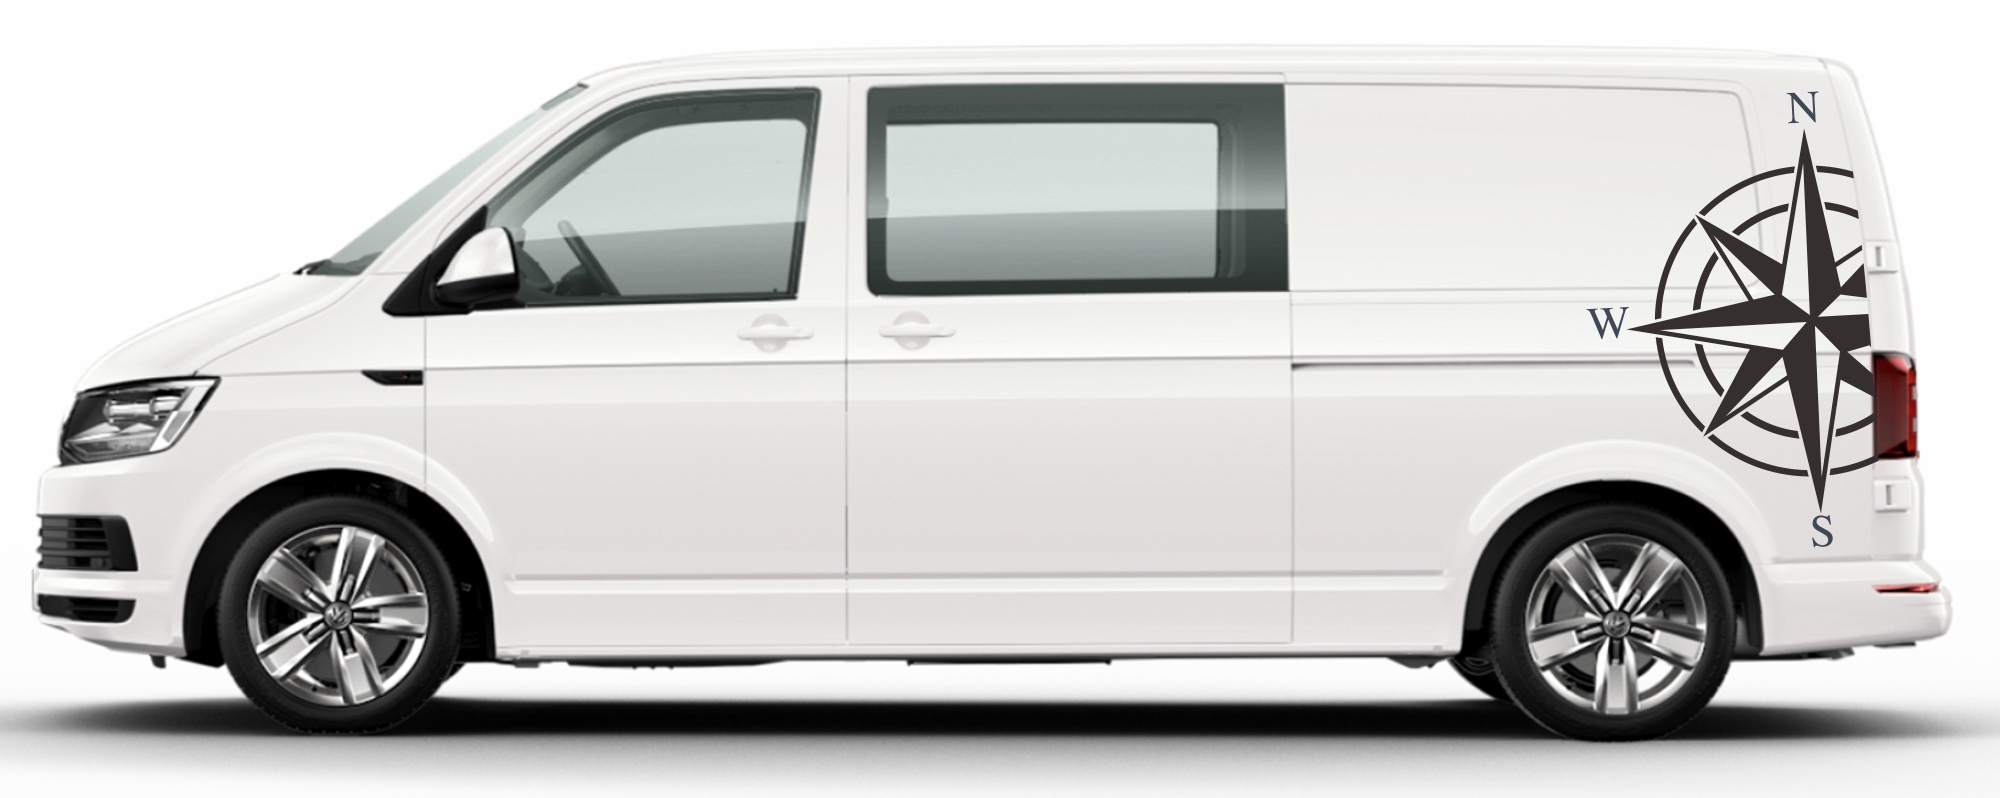 Naklejki VW T5 T6 róża wiatów sea rose Transporter pasy na boki long naklejki decals stripes sticker aufkleber nalepky samolepky tuning